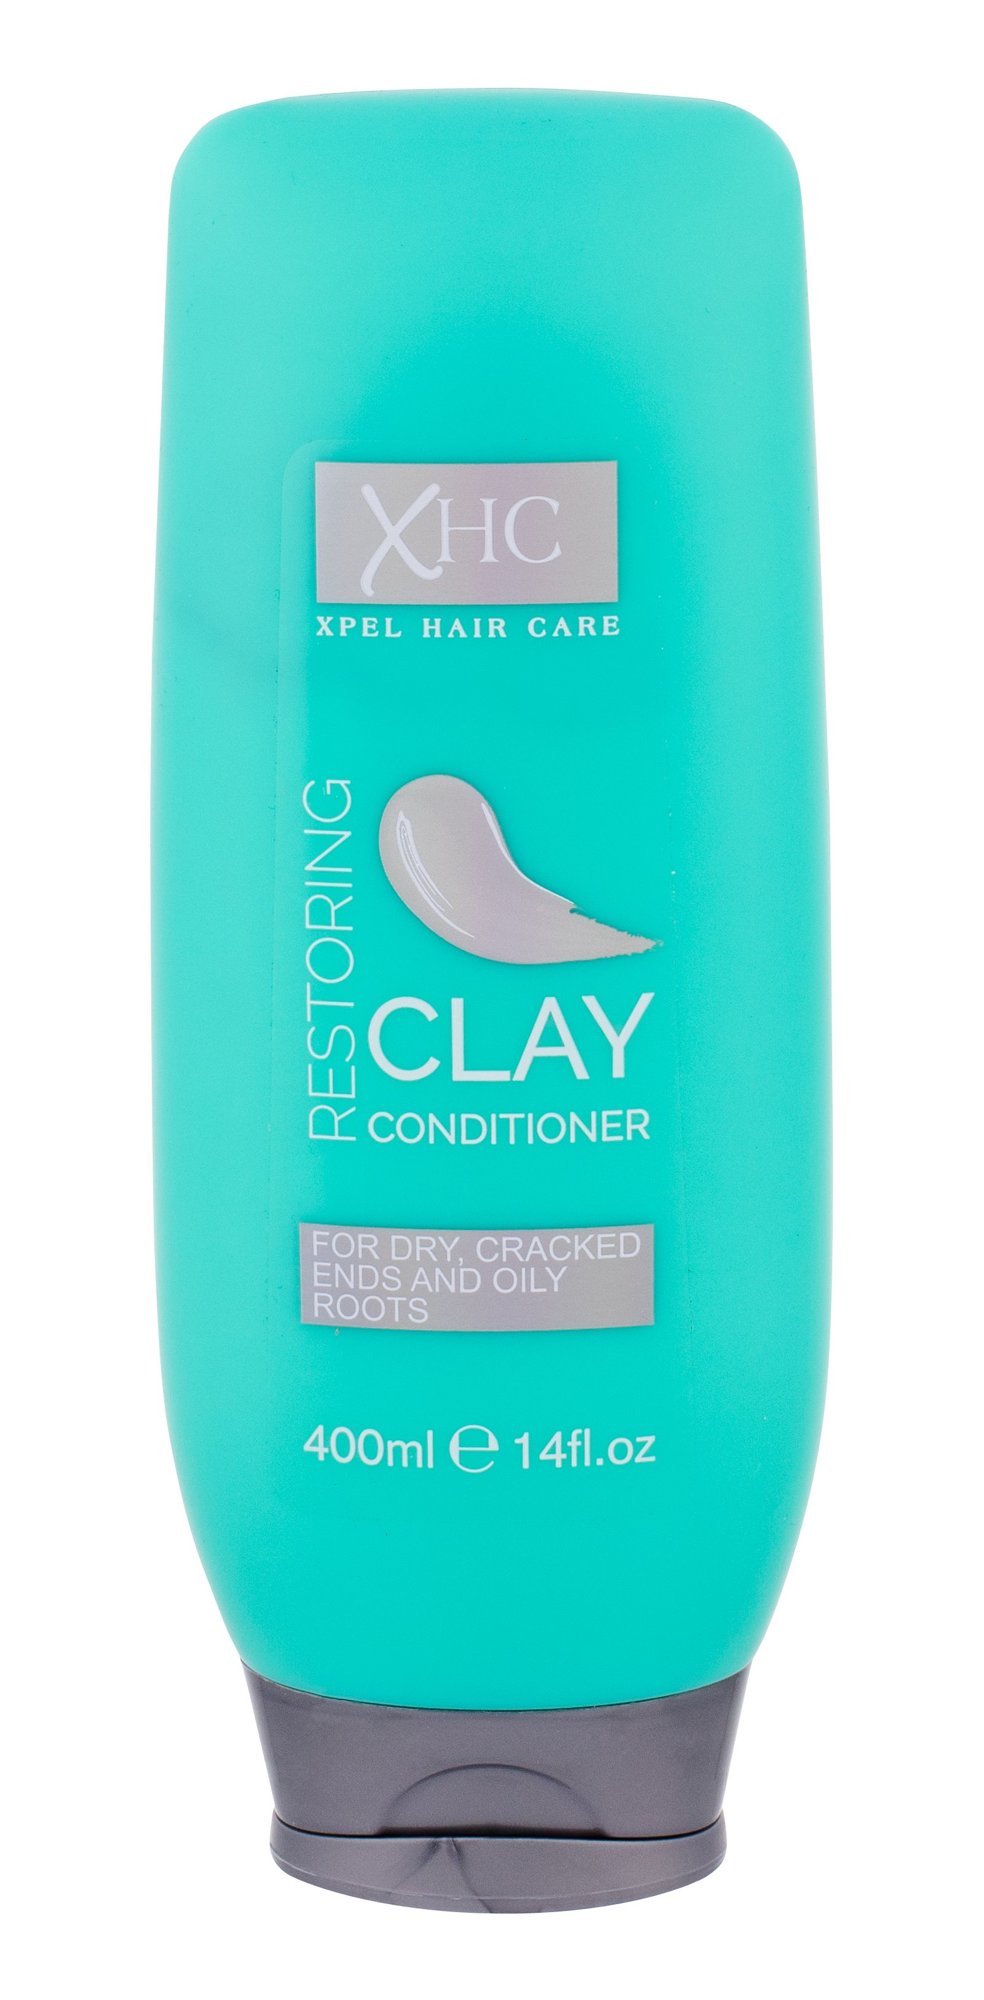 Xpel Hair Care Restoring Clay kondicionierius